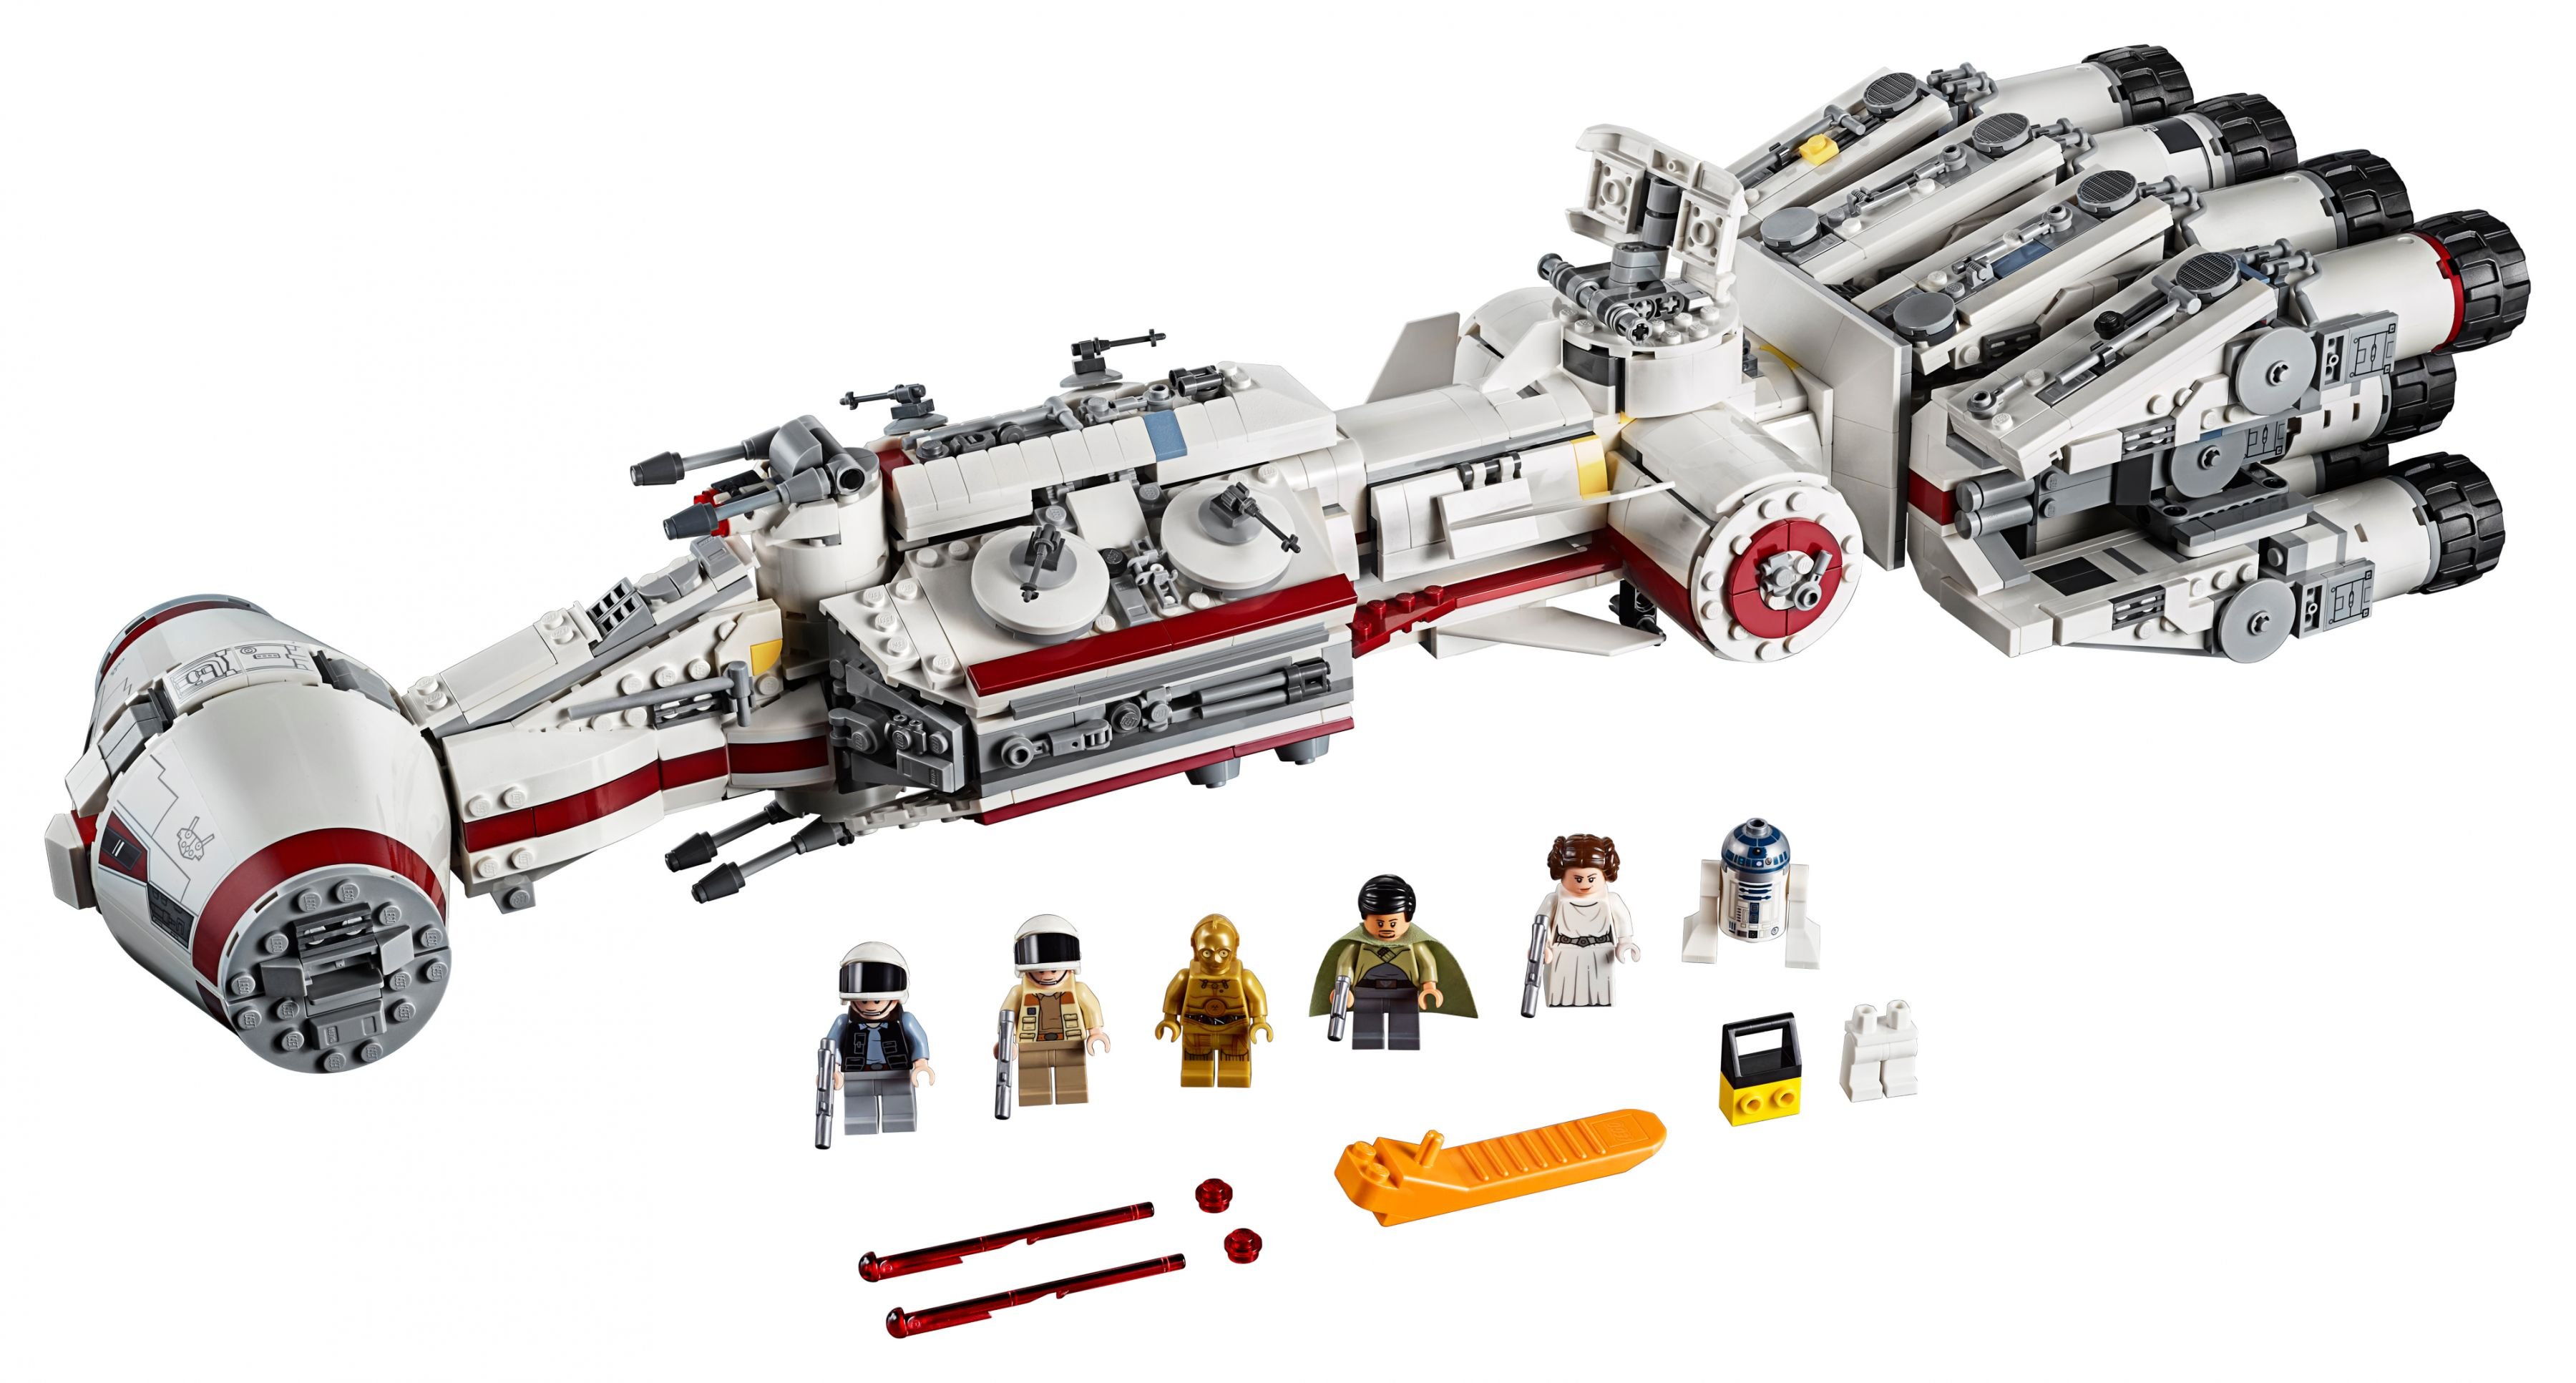 LEGO Star Wars 75244 Tantive IV LEGO_75244.jpg